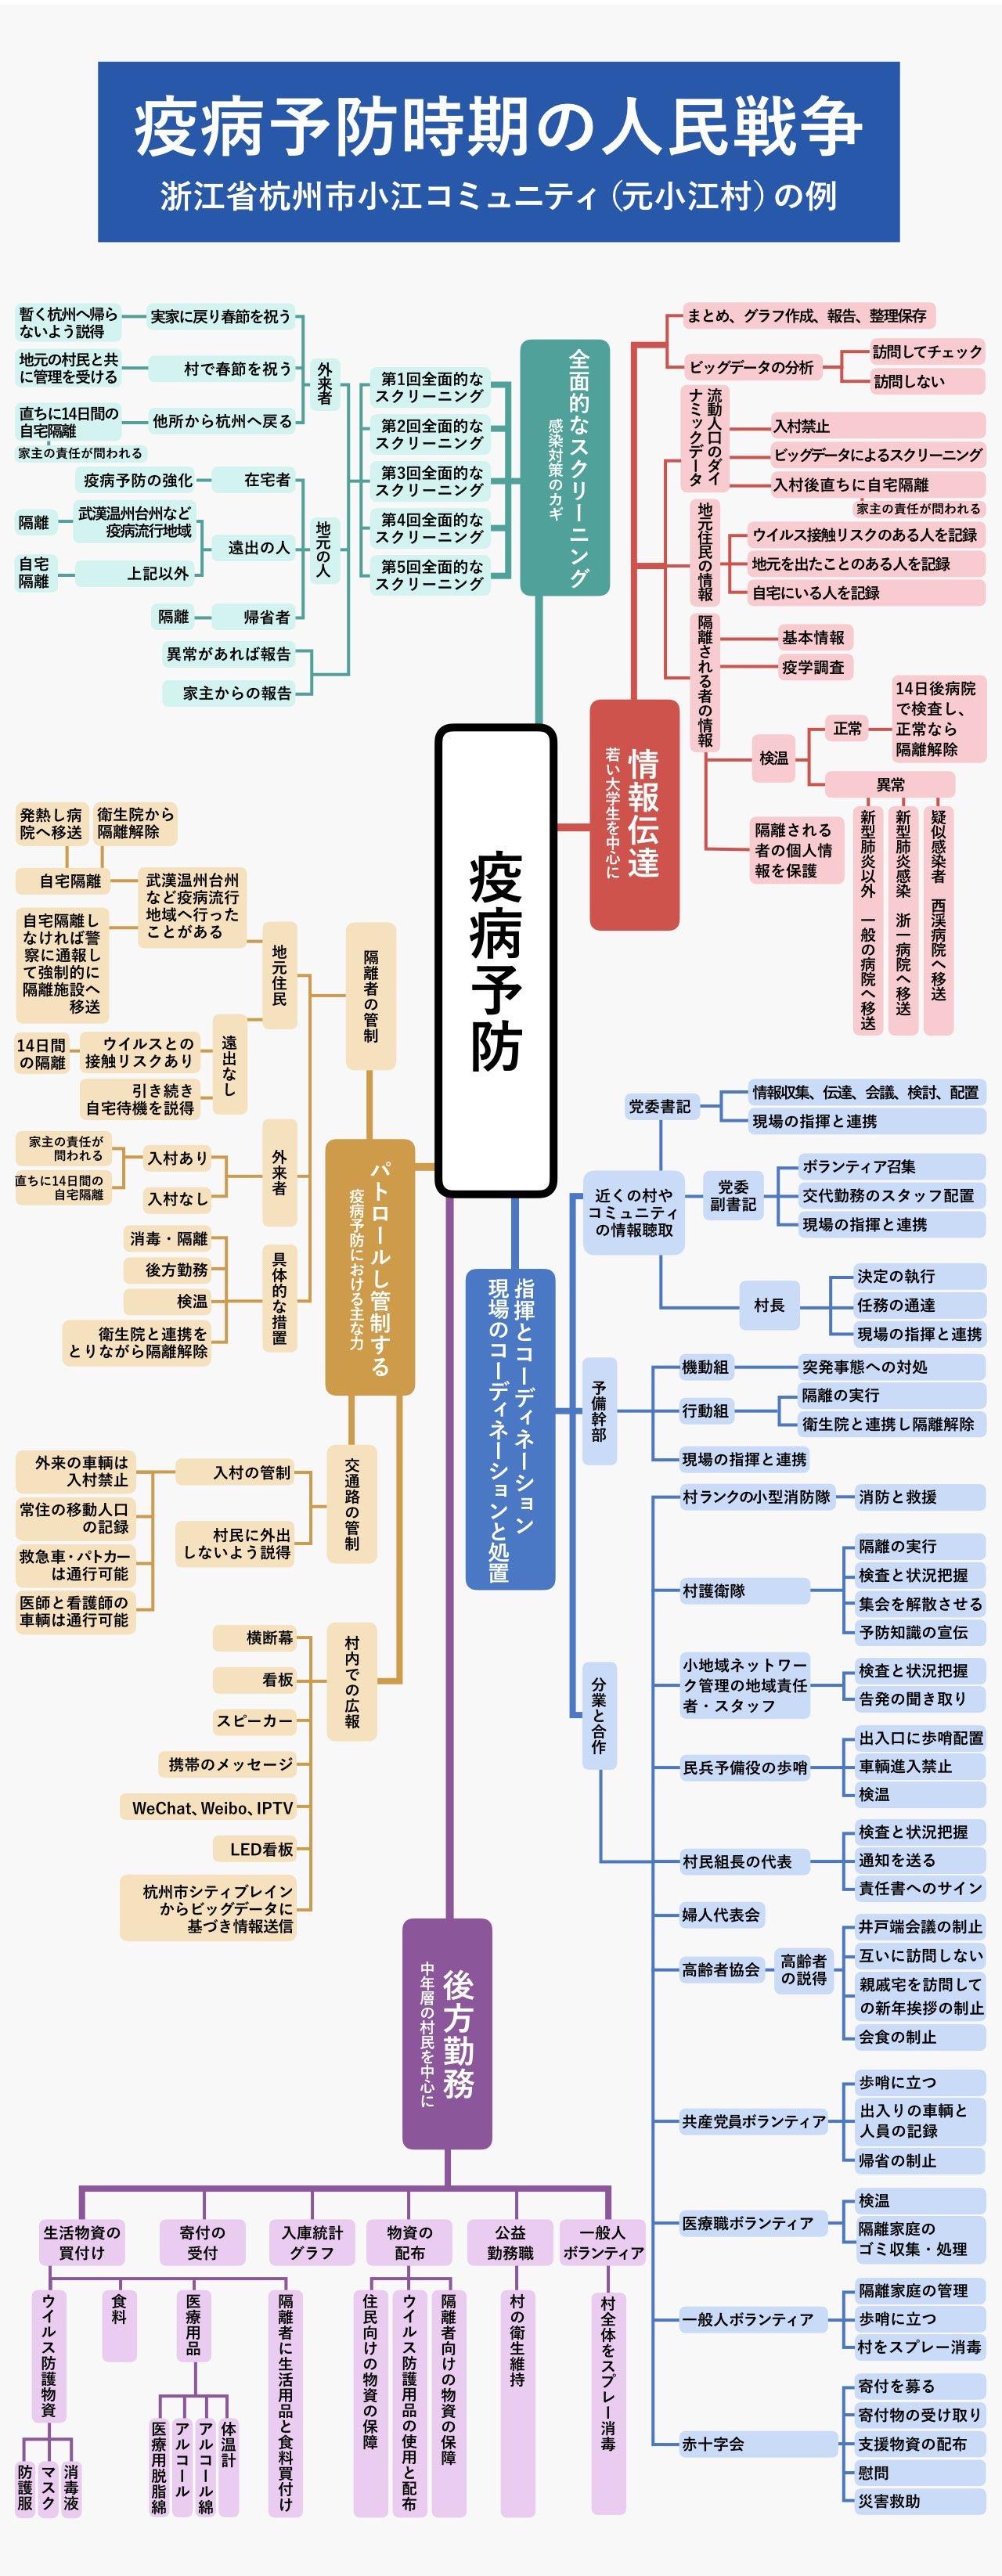 小江社区が作成した対策マップ